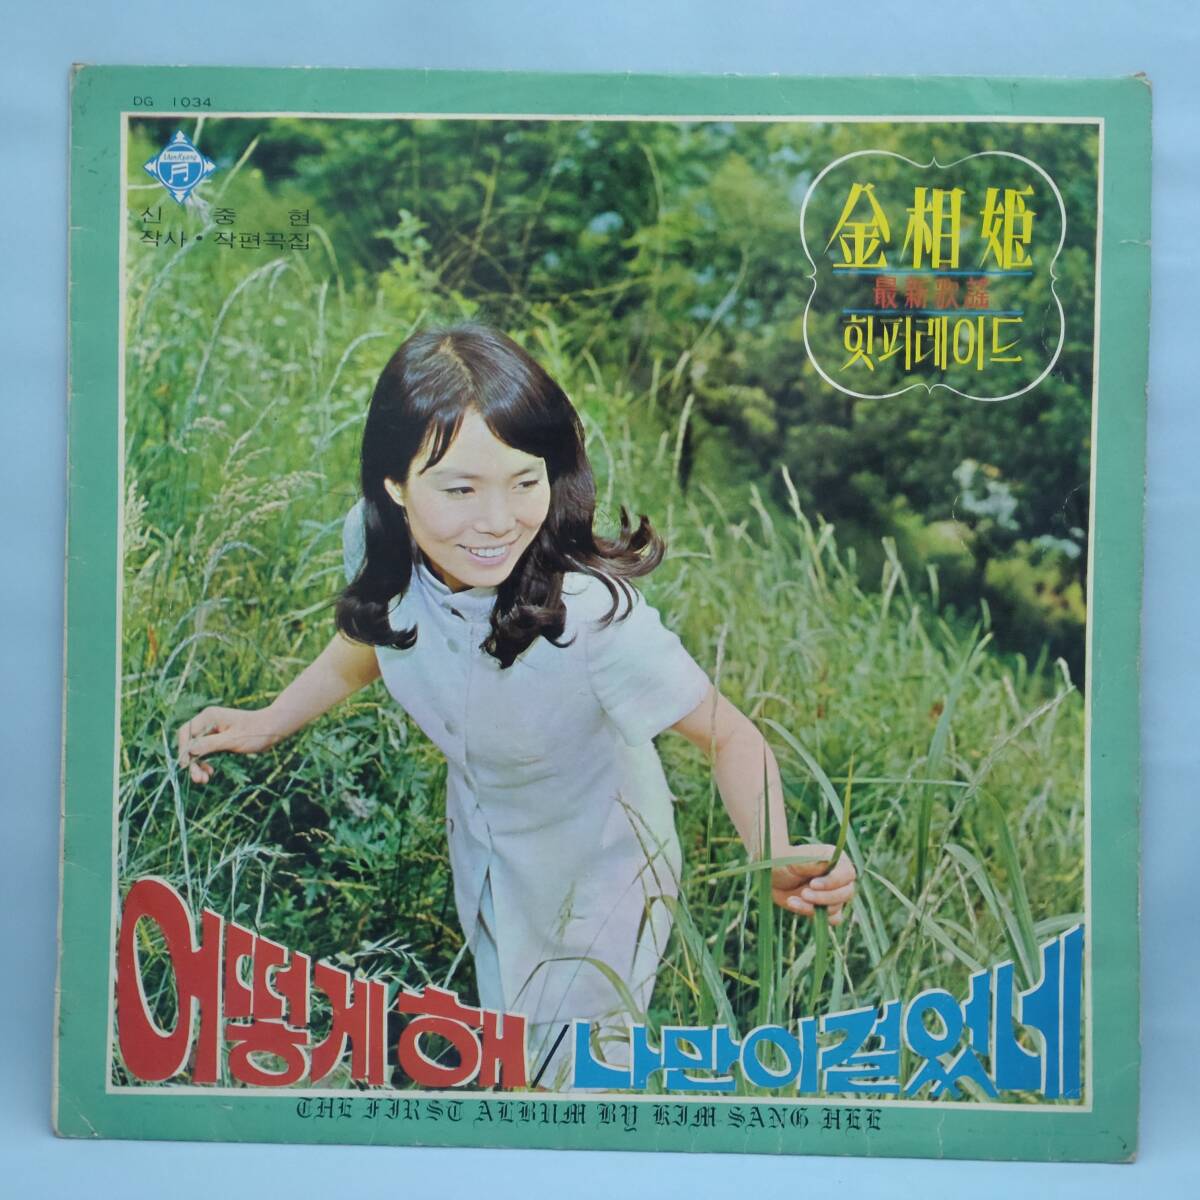 リアルオリジナル 申重鉉 シン・ジュンヒョン 歌 キム・サンヒ (金相姫）の「どうすれば」「私一人で歩いた」韓国ペラジャケ 1969年の画像1